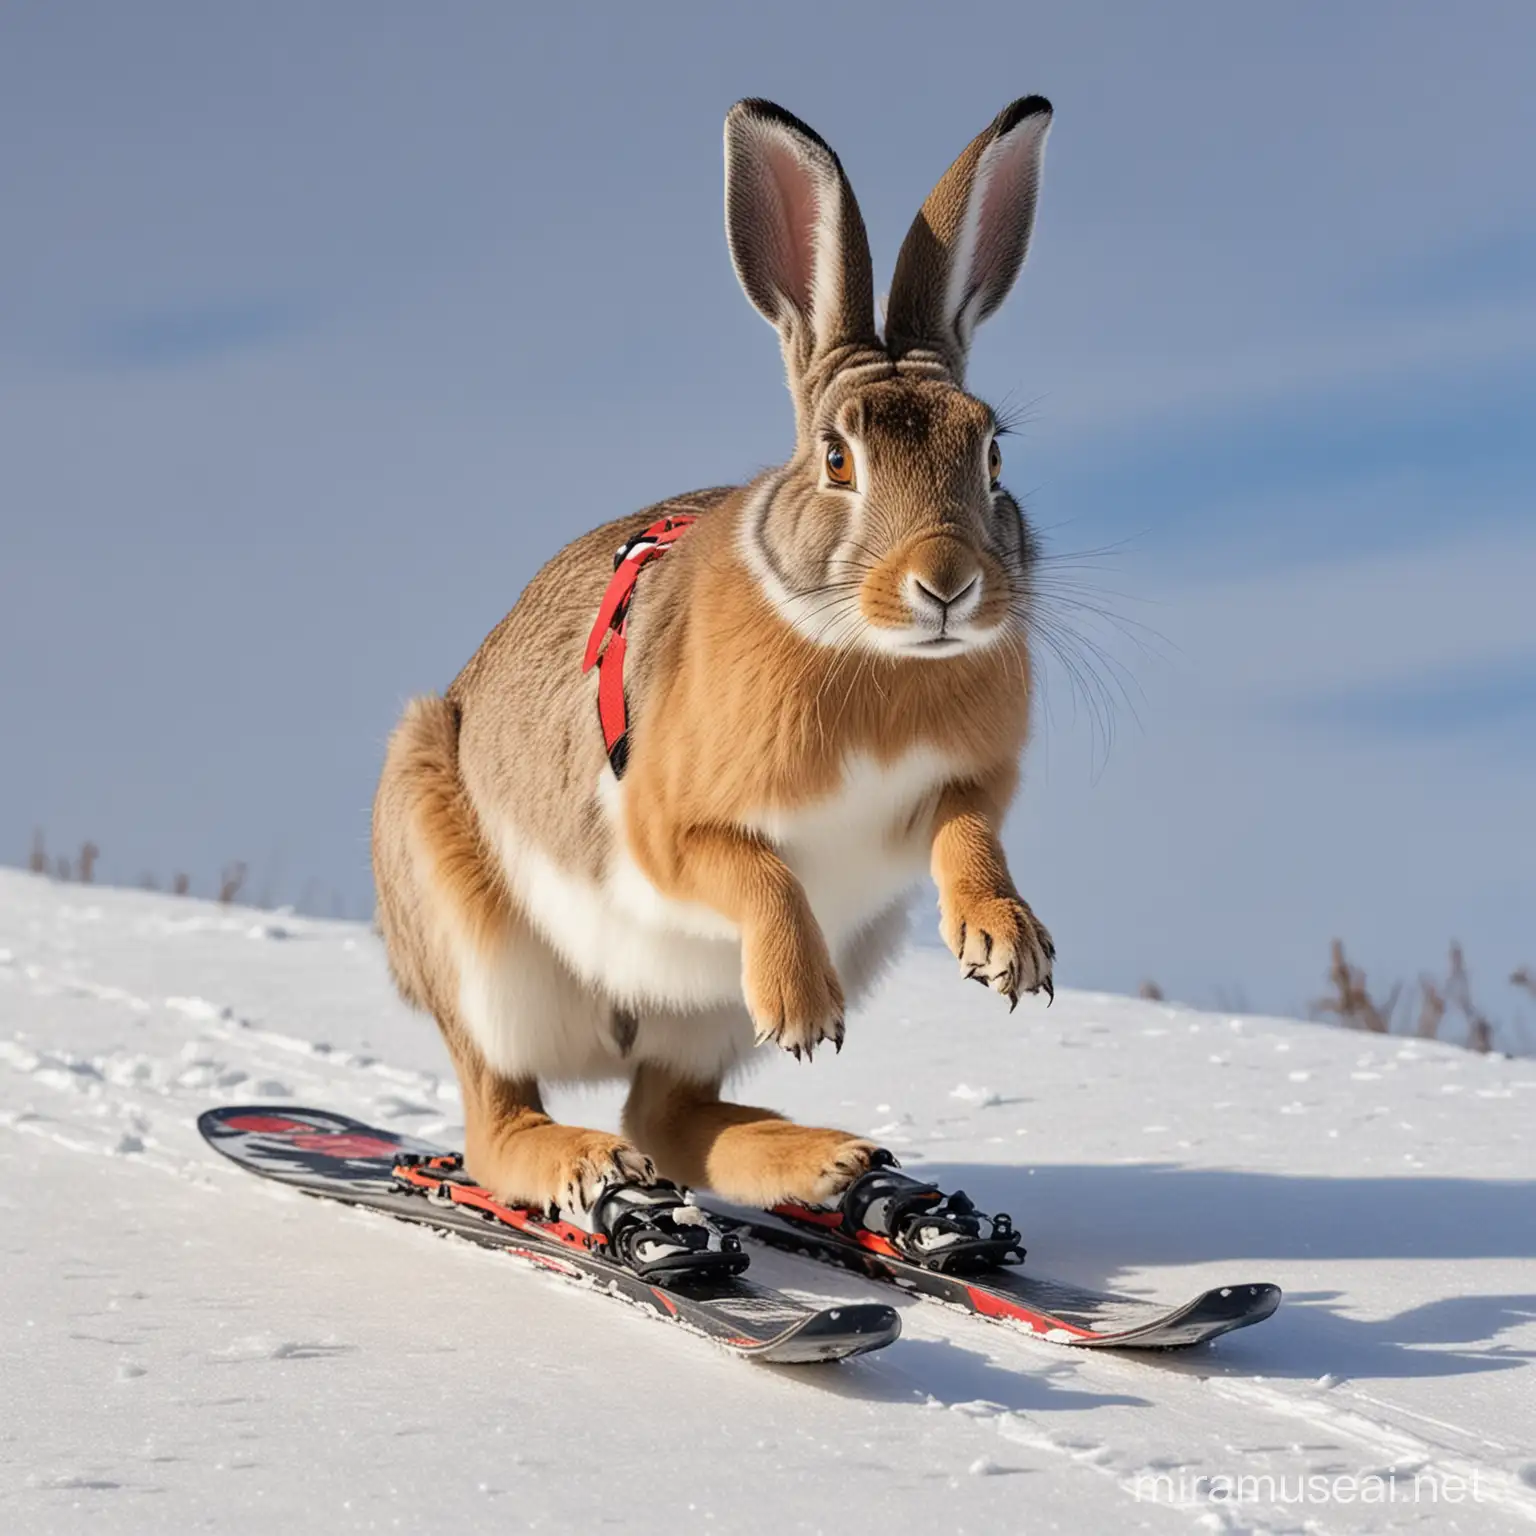 заяц русак с протезами для бега вместо лаб катается на лыжах зимой